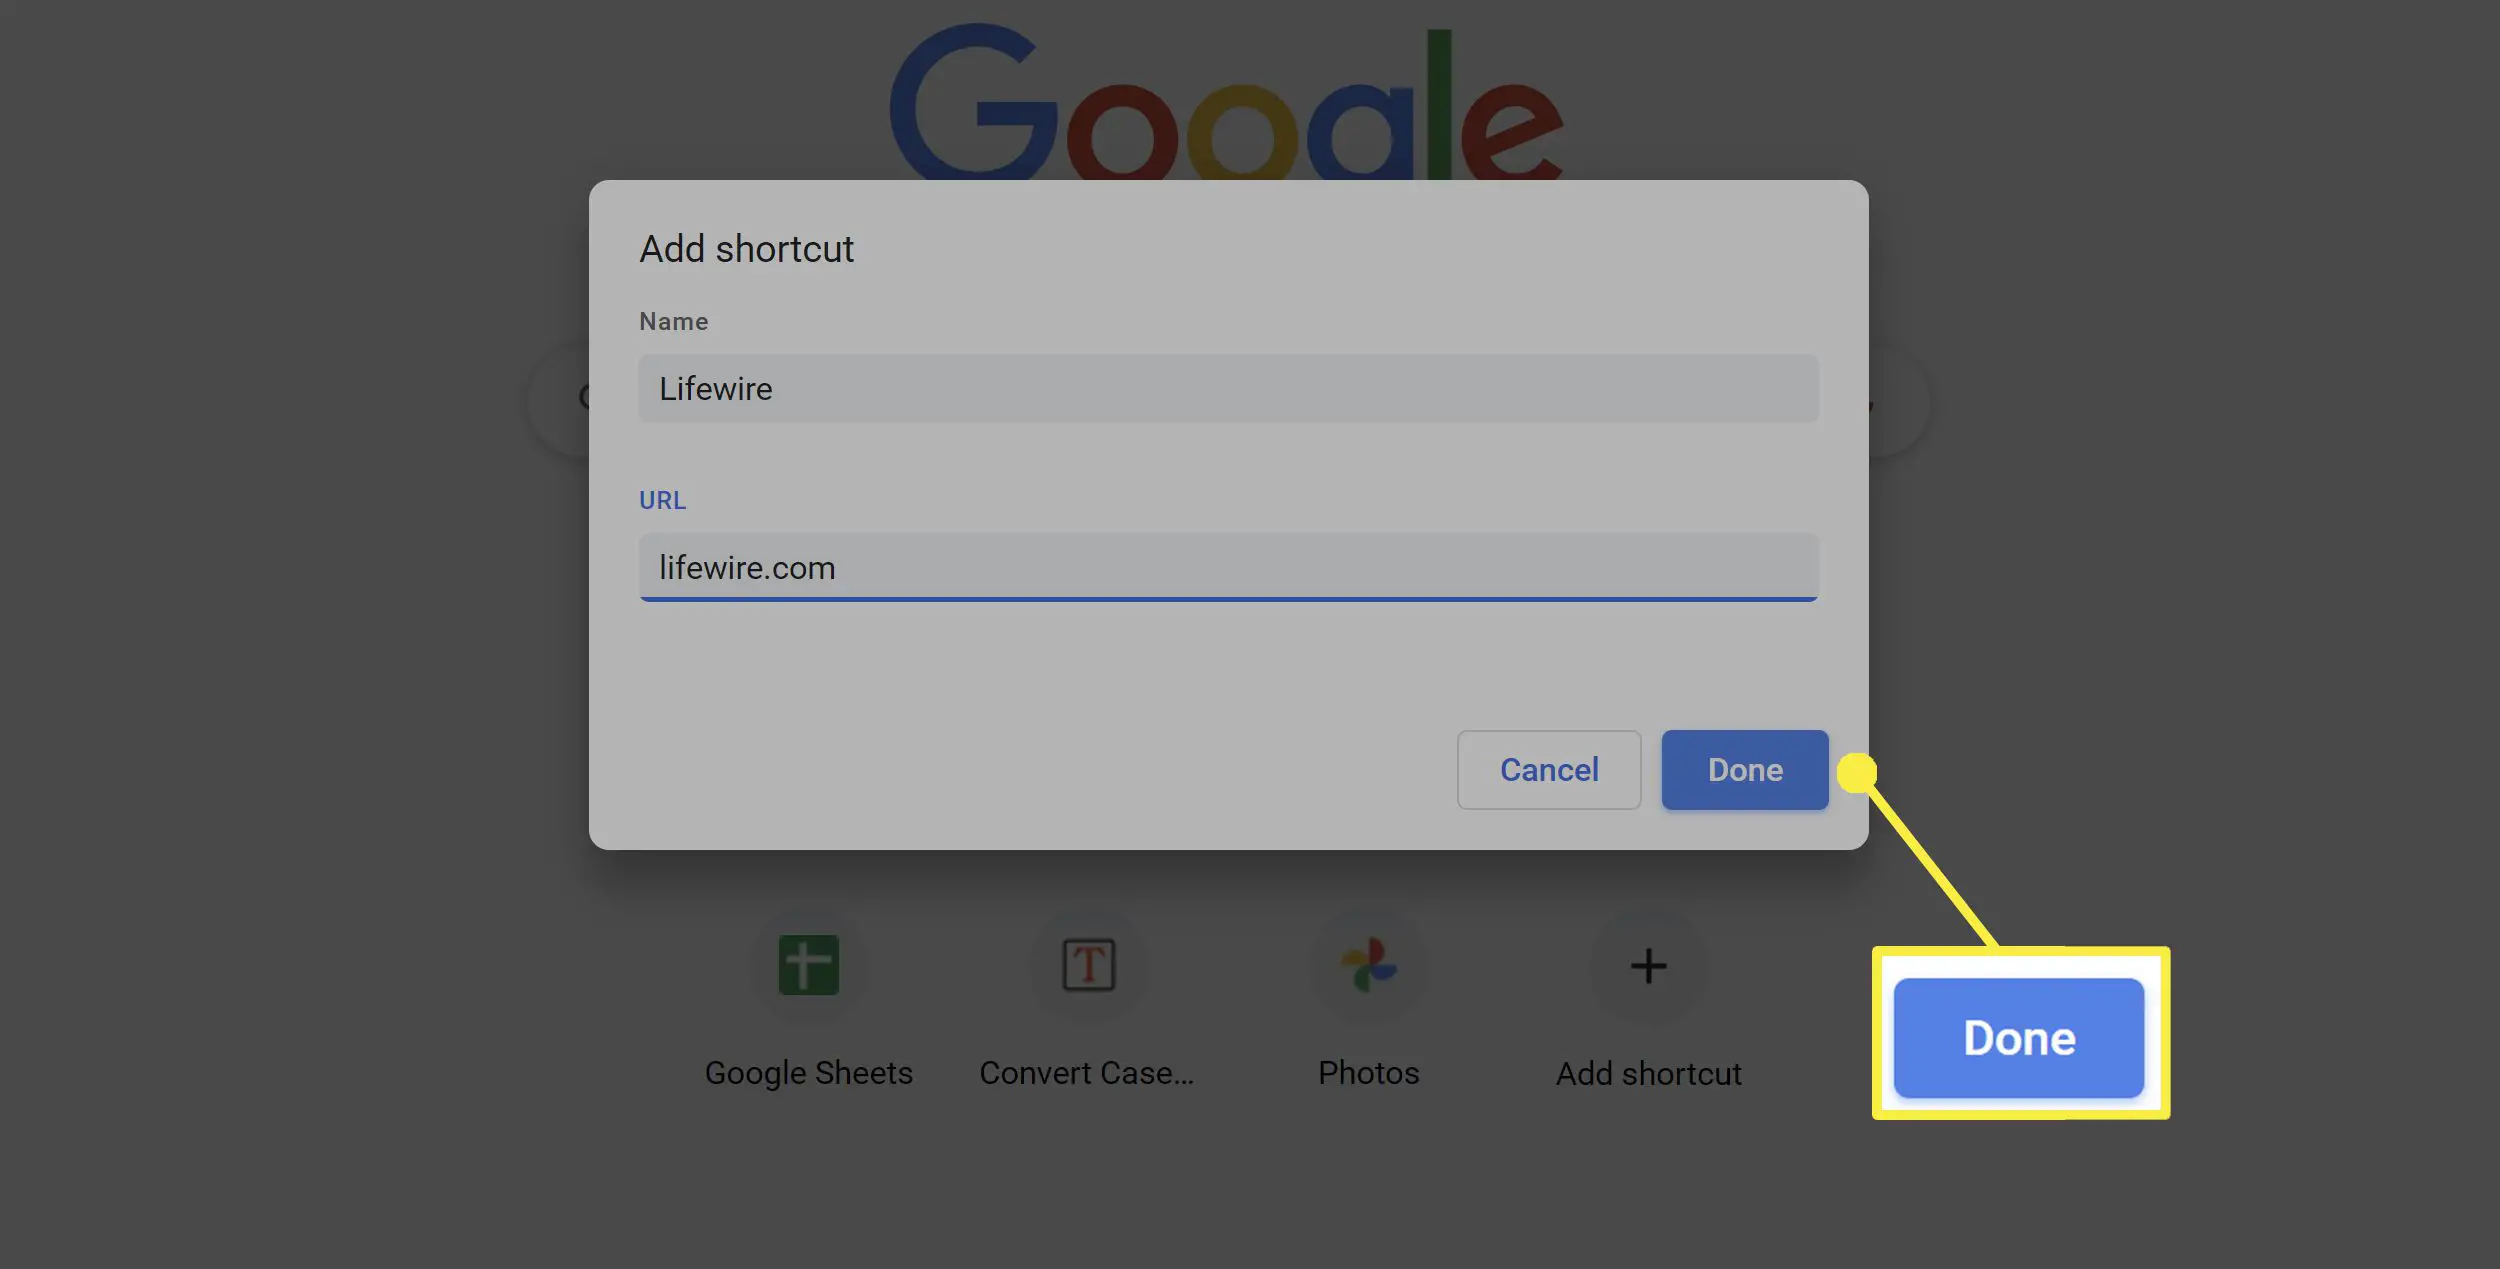 Adicione atalhos personalizados no Google Chrome.